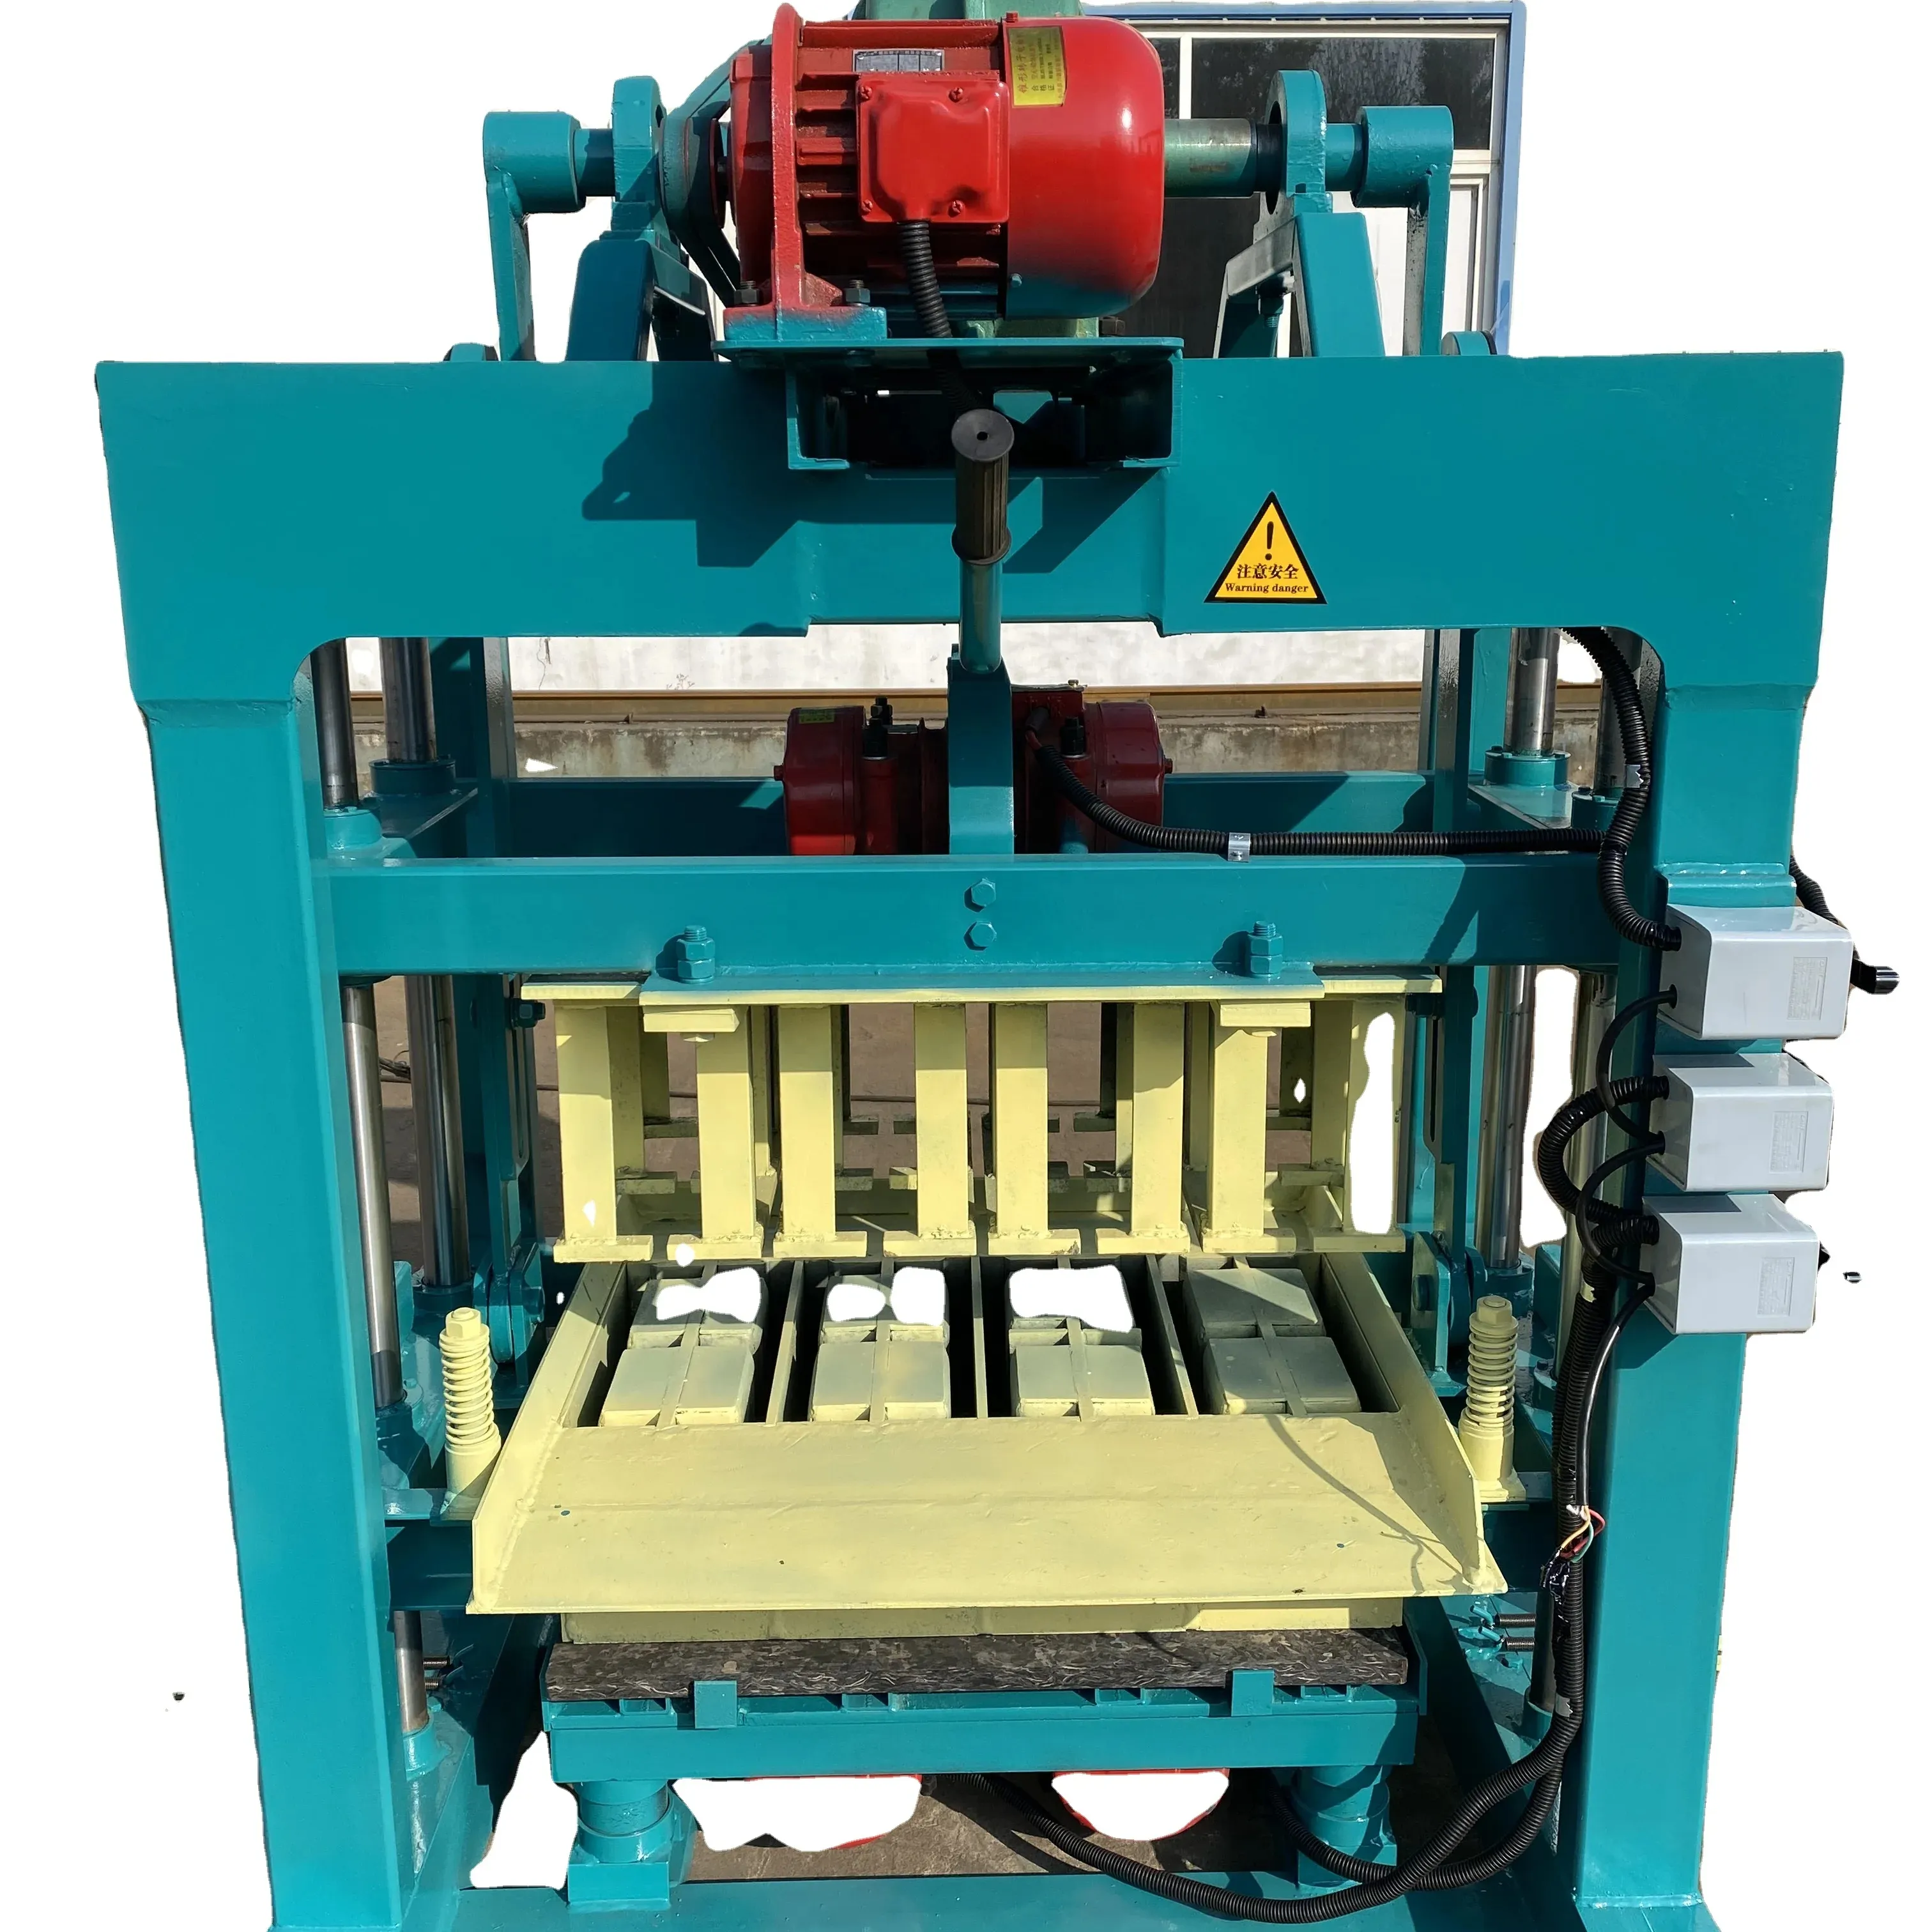 4-40 Máquina de fabricación de ladrillos semiautomatizada utilizada en la construcción de ingeniería